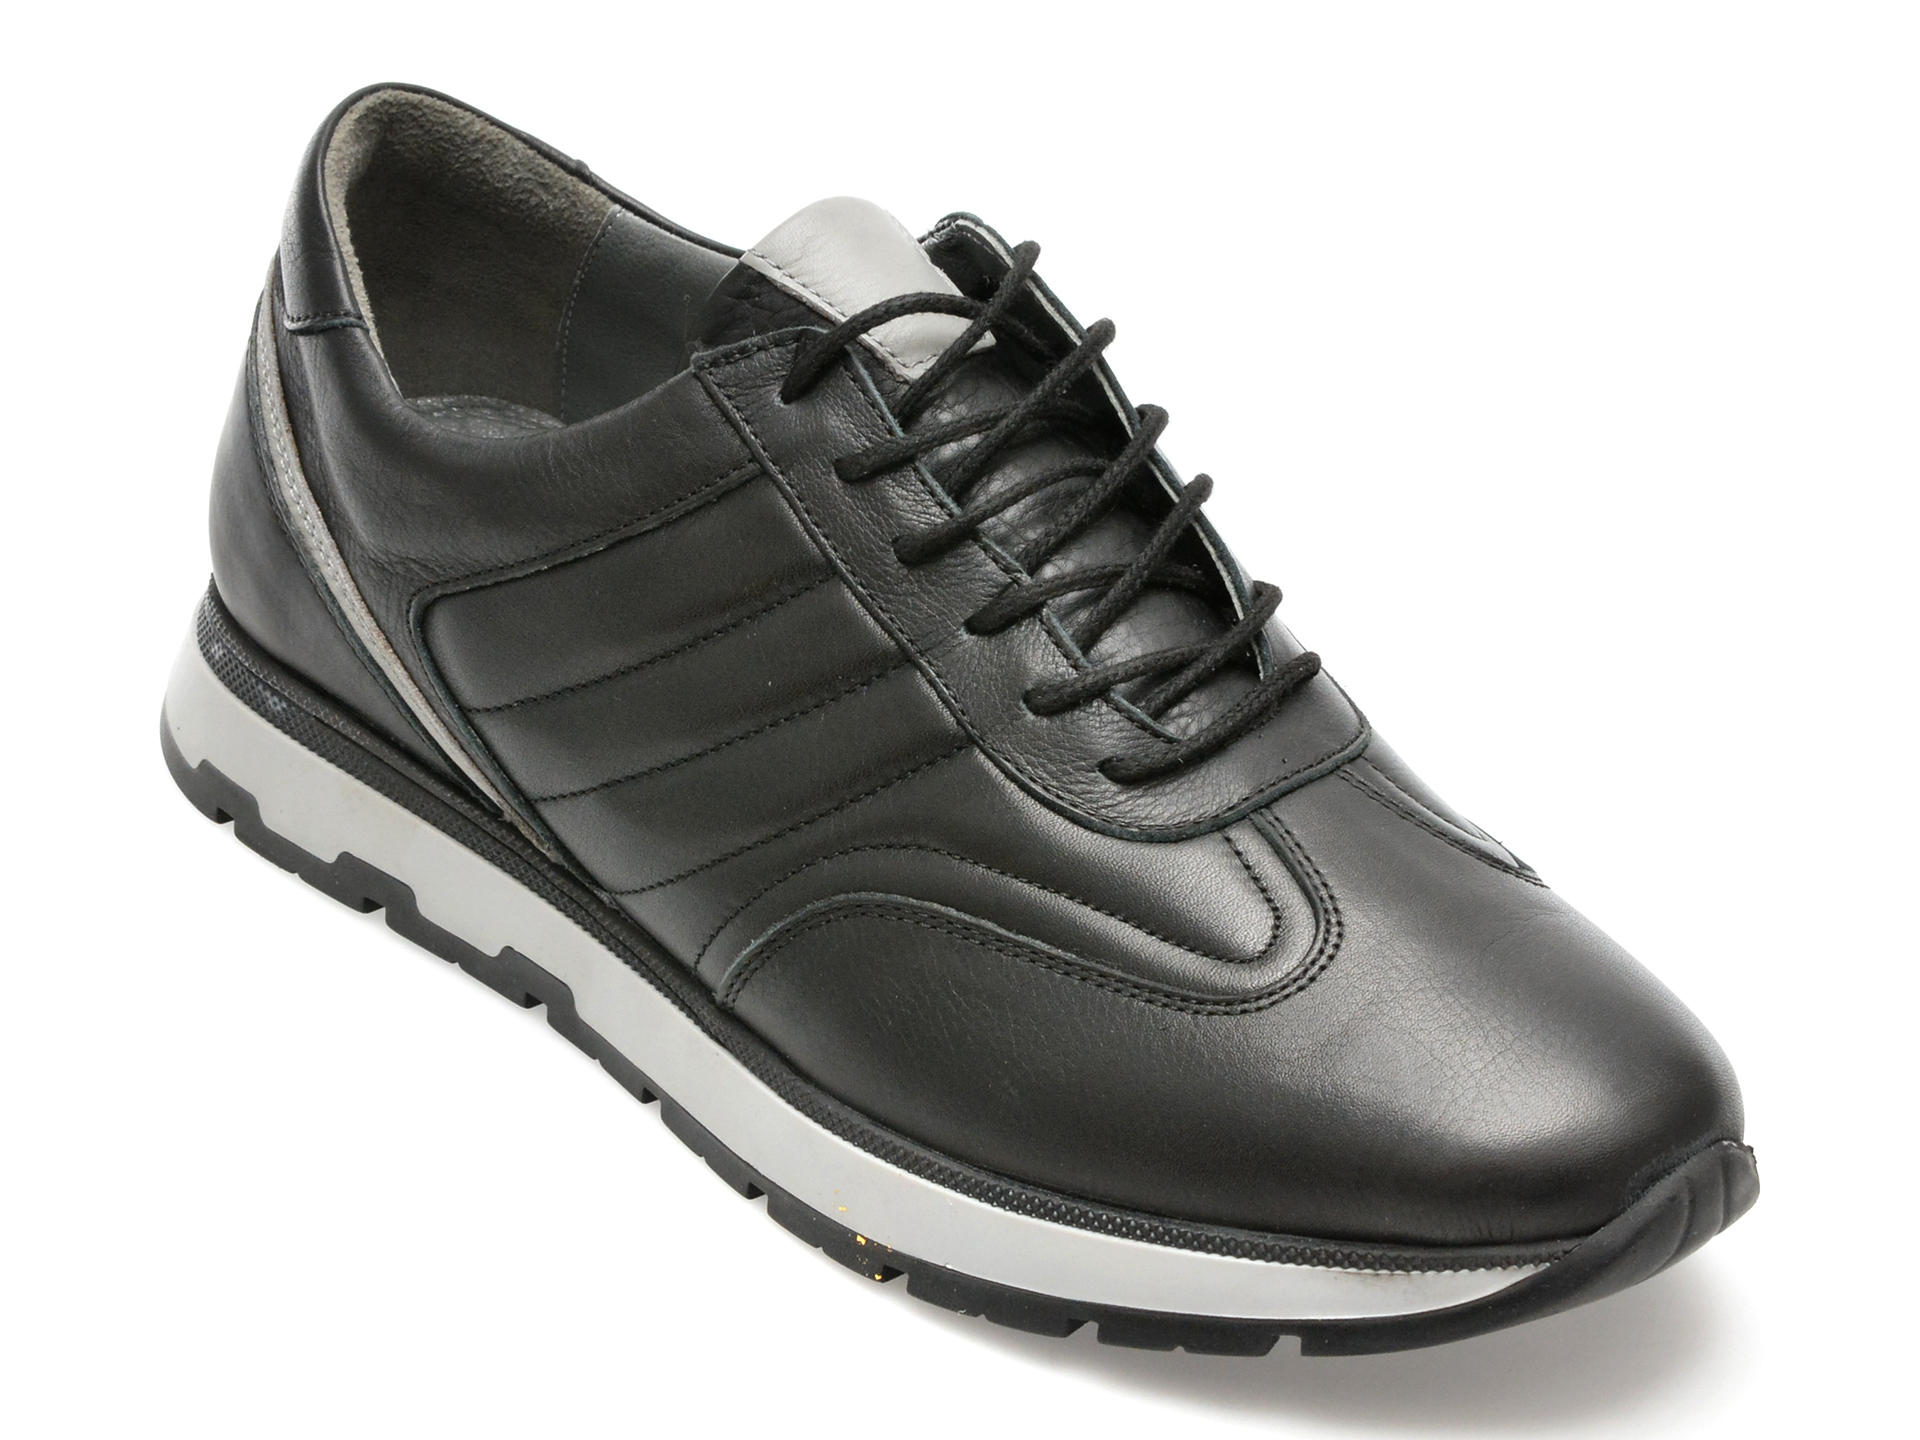 Pantofi AXXELLL negri, SY704, din piele naturala